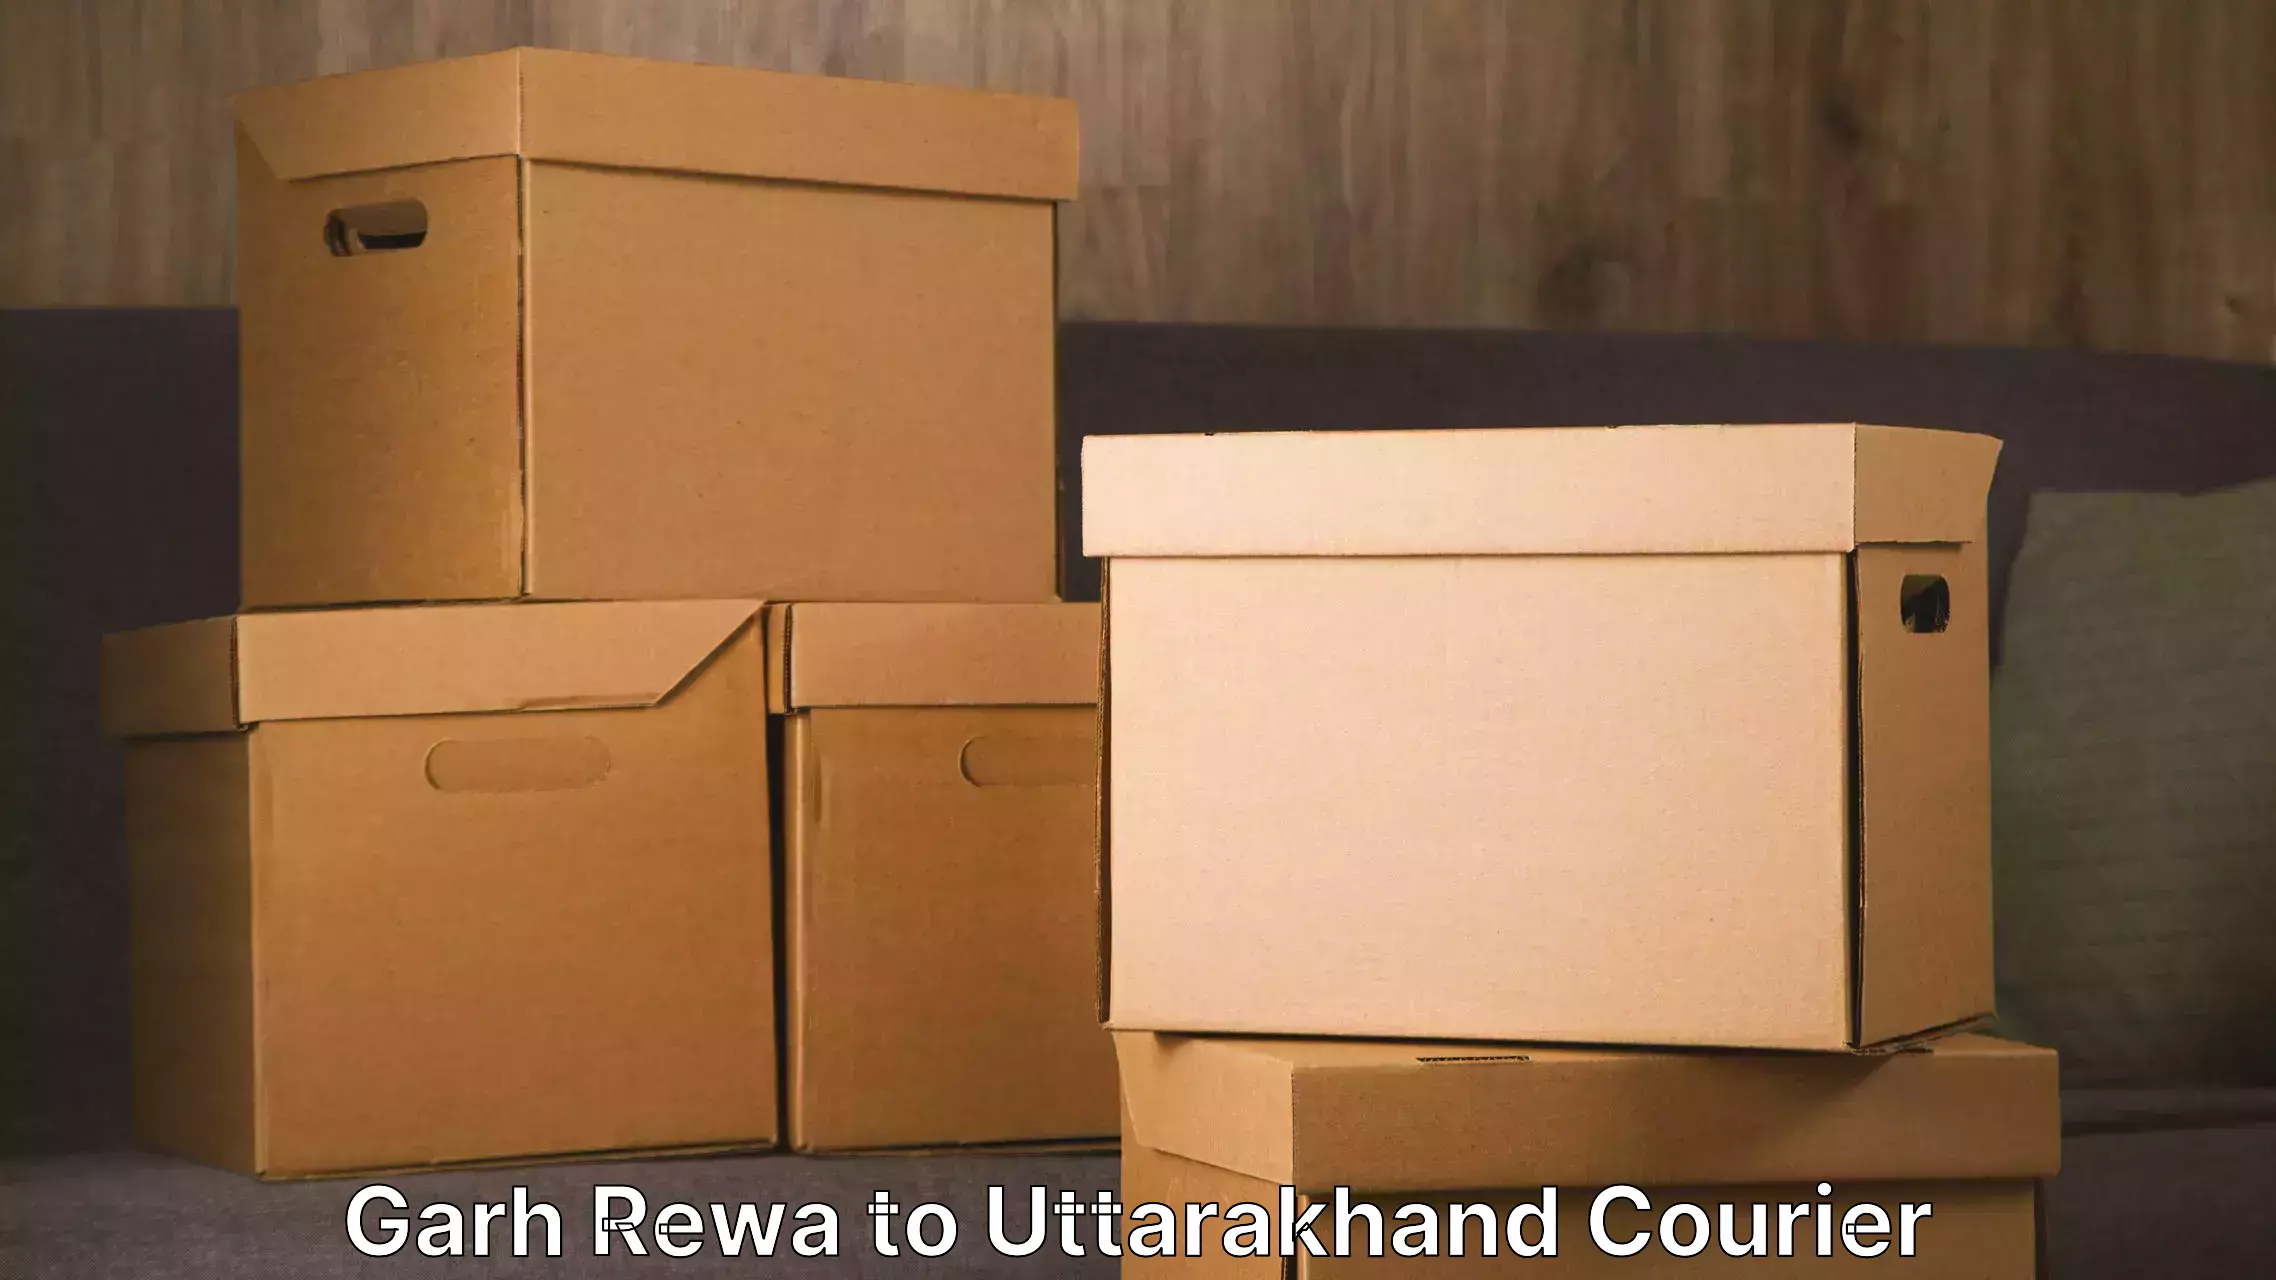 Budget-friendly movers Garh Rewa to Paithani